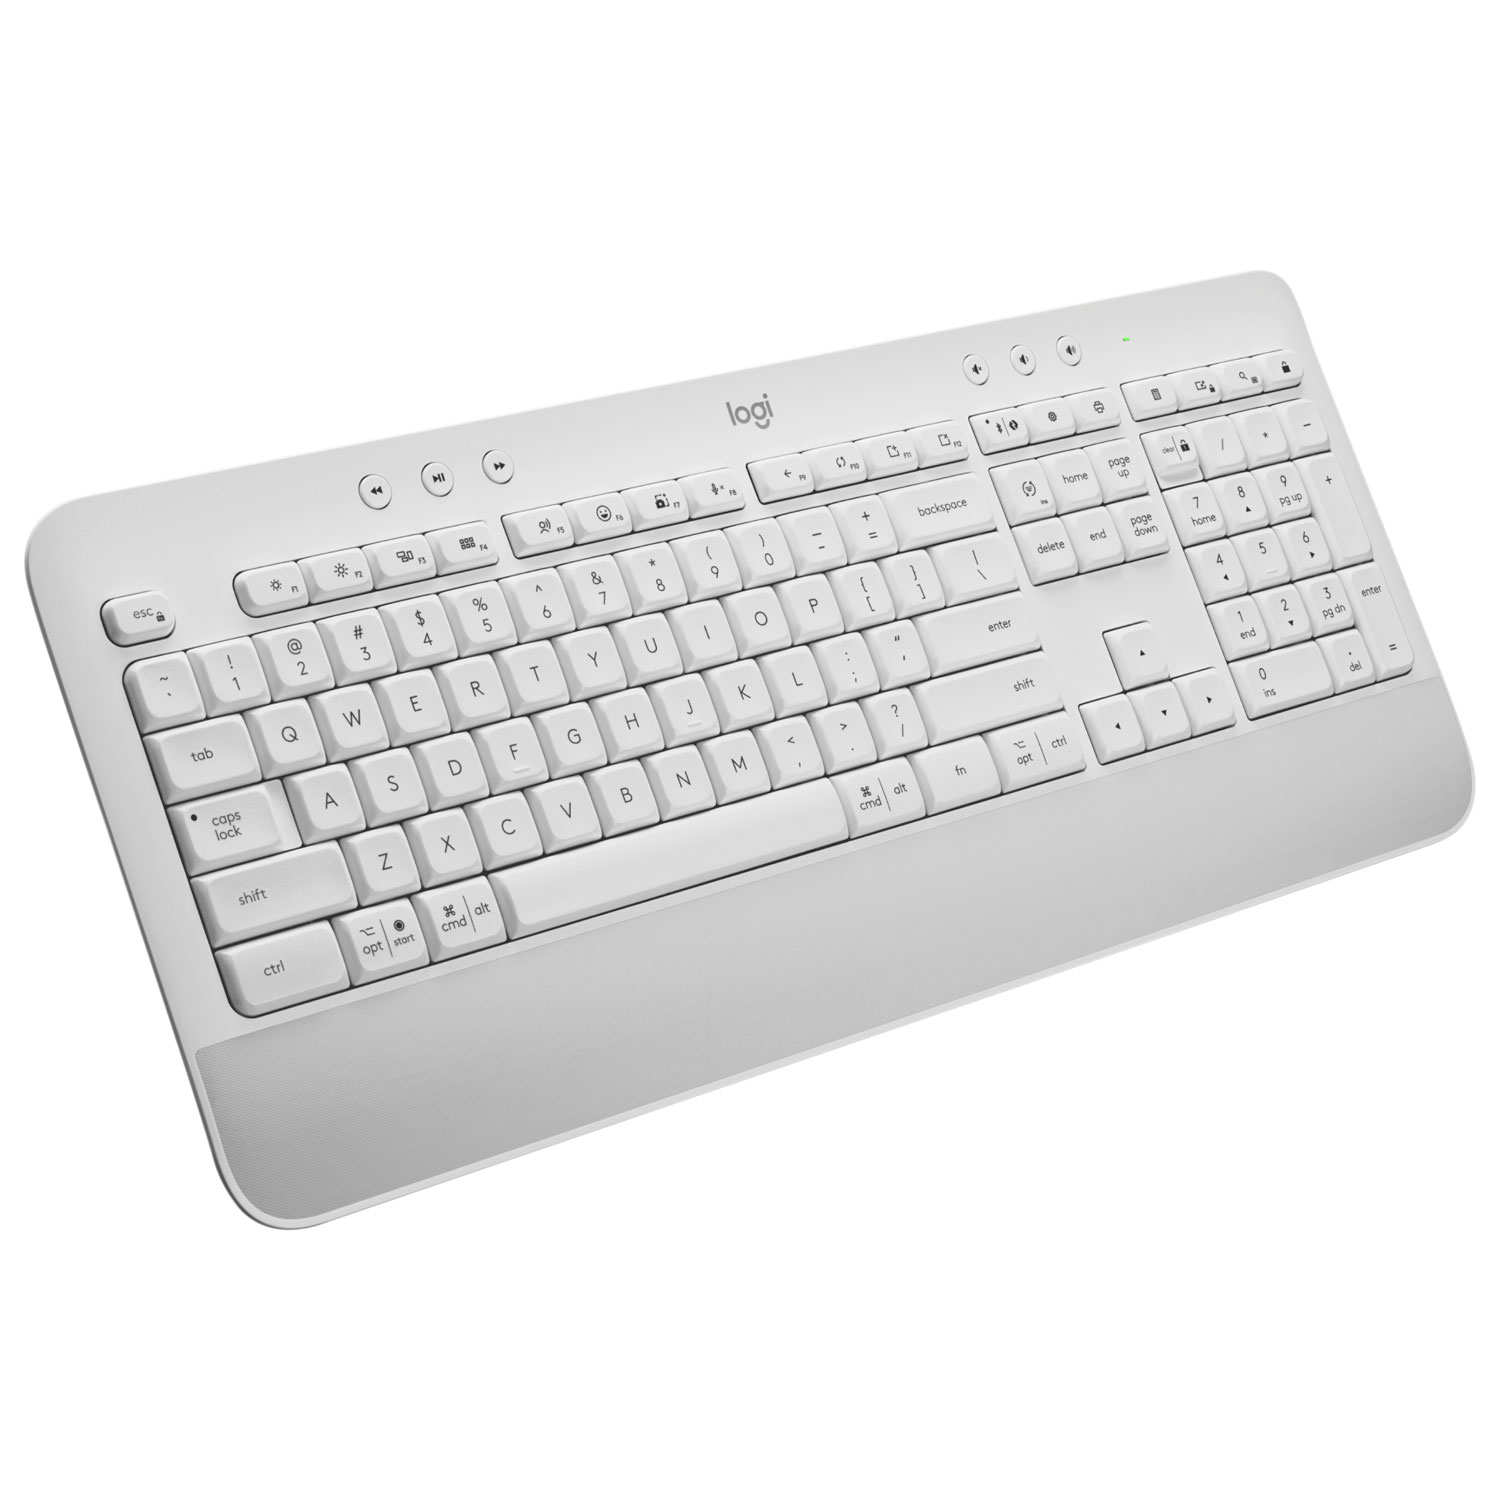 Logitech SIGNATURE K650 Bluetooth Full-Size Keyboard - Off-White